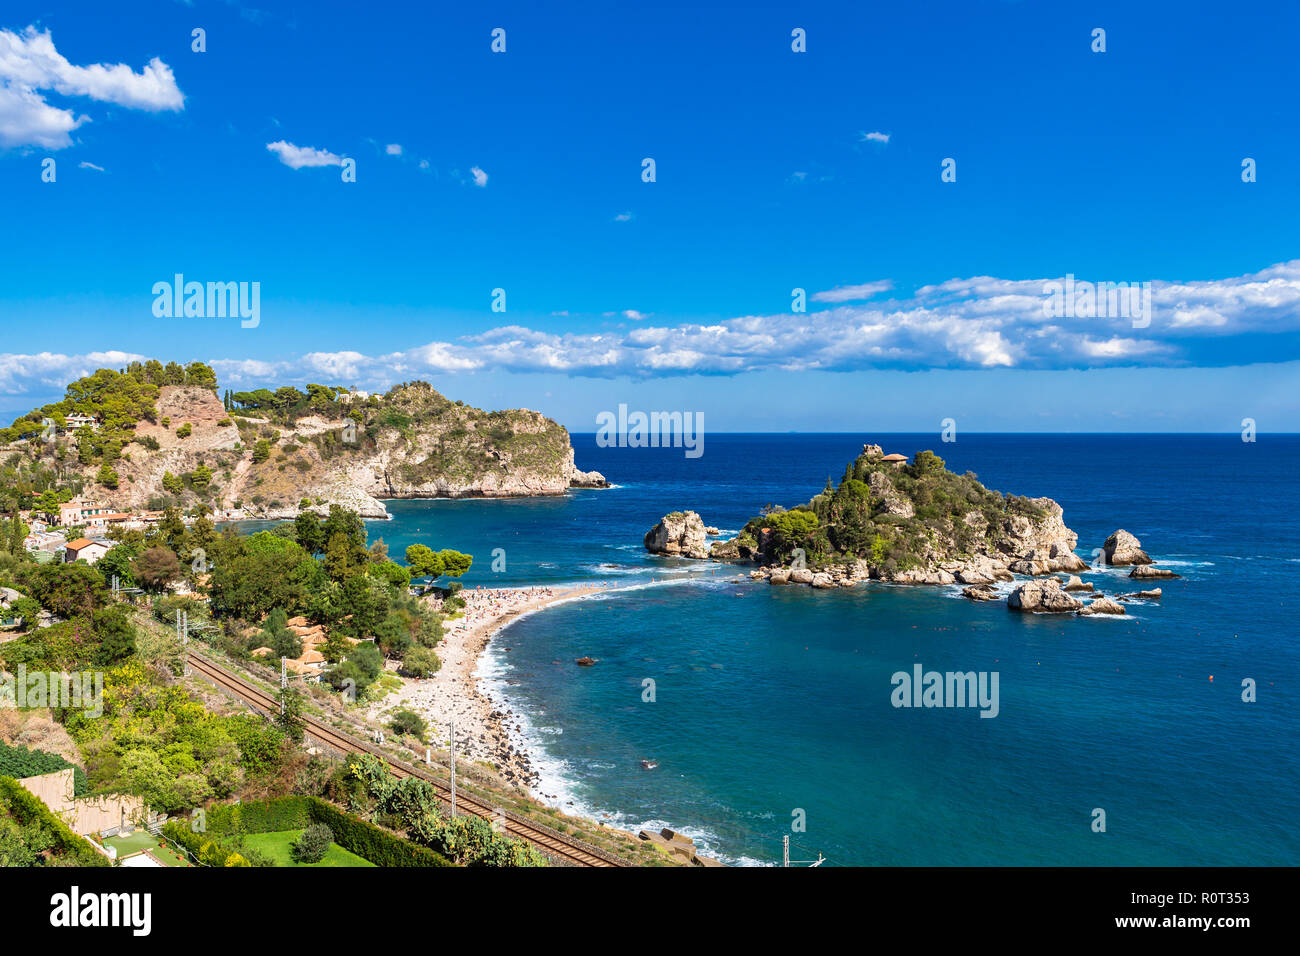 Beautiful beach at Isola Bella in Taormina, Sicily, Italy. Stock Photo